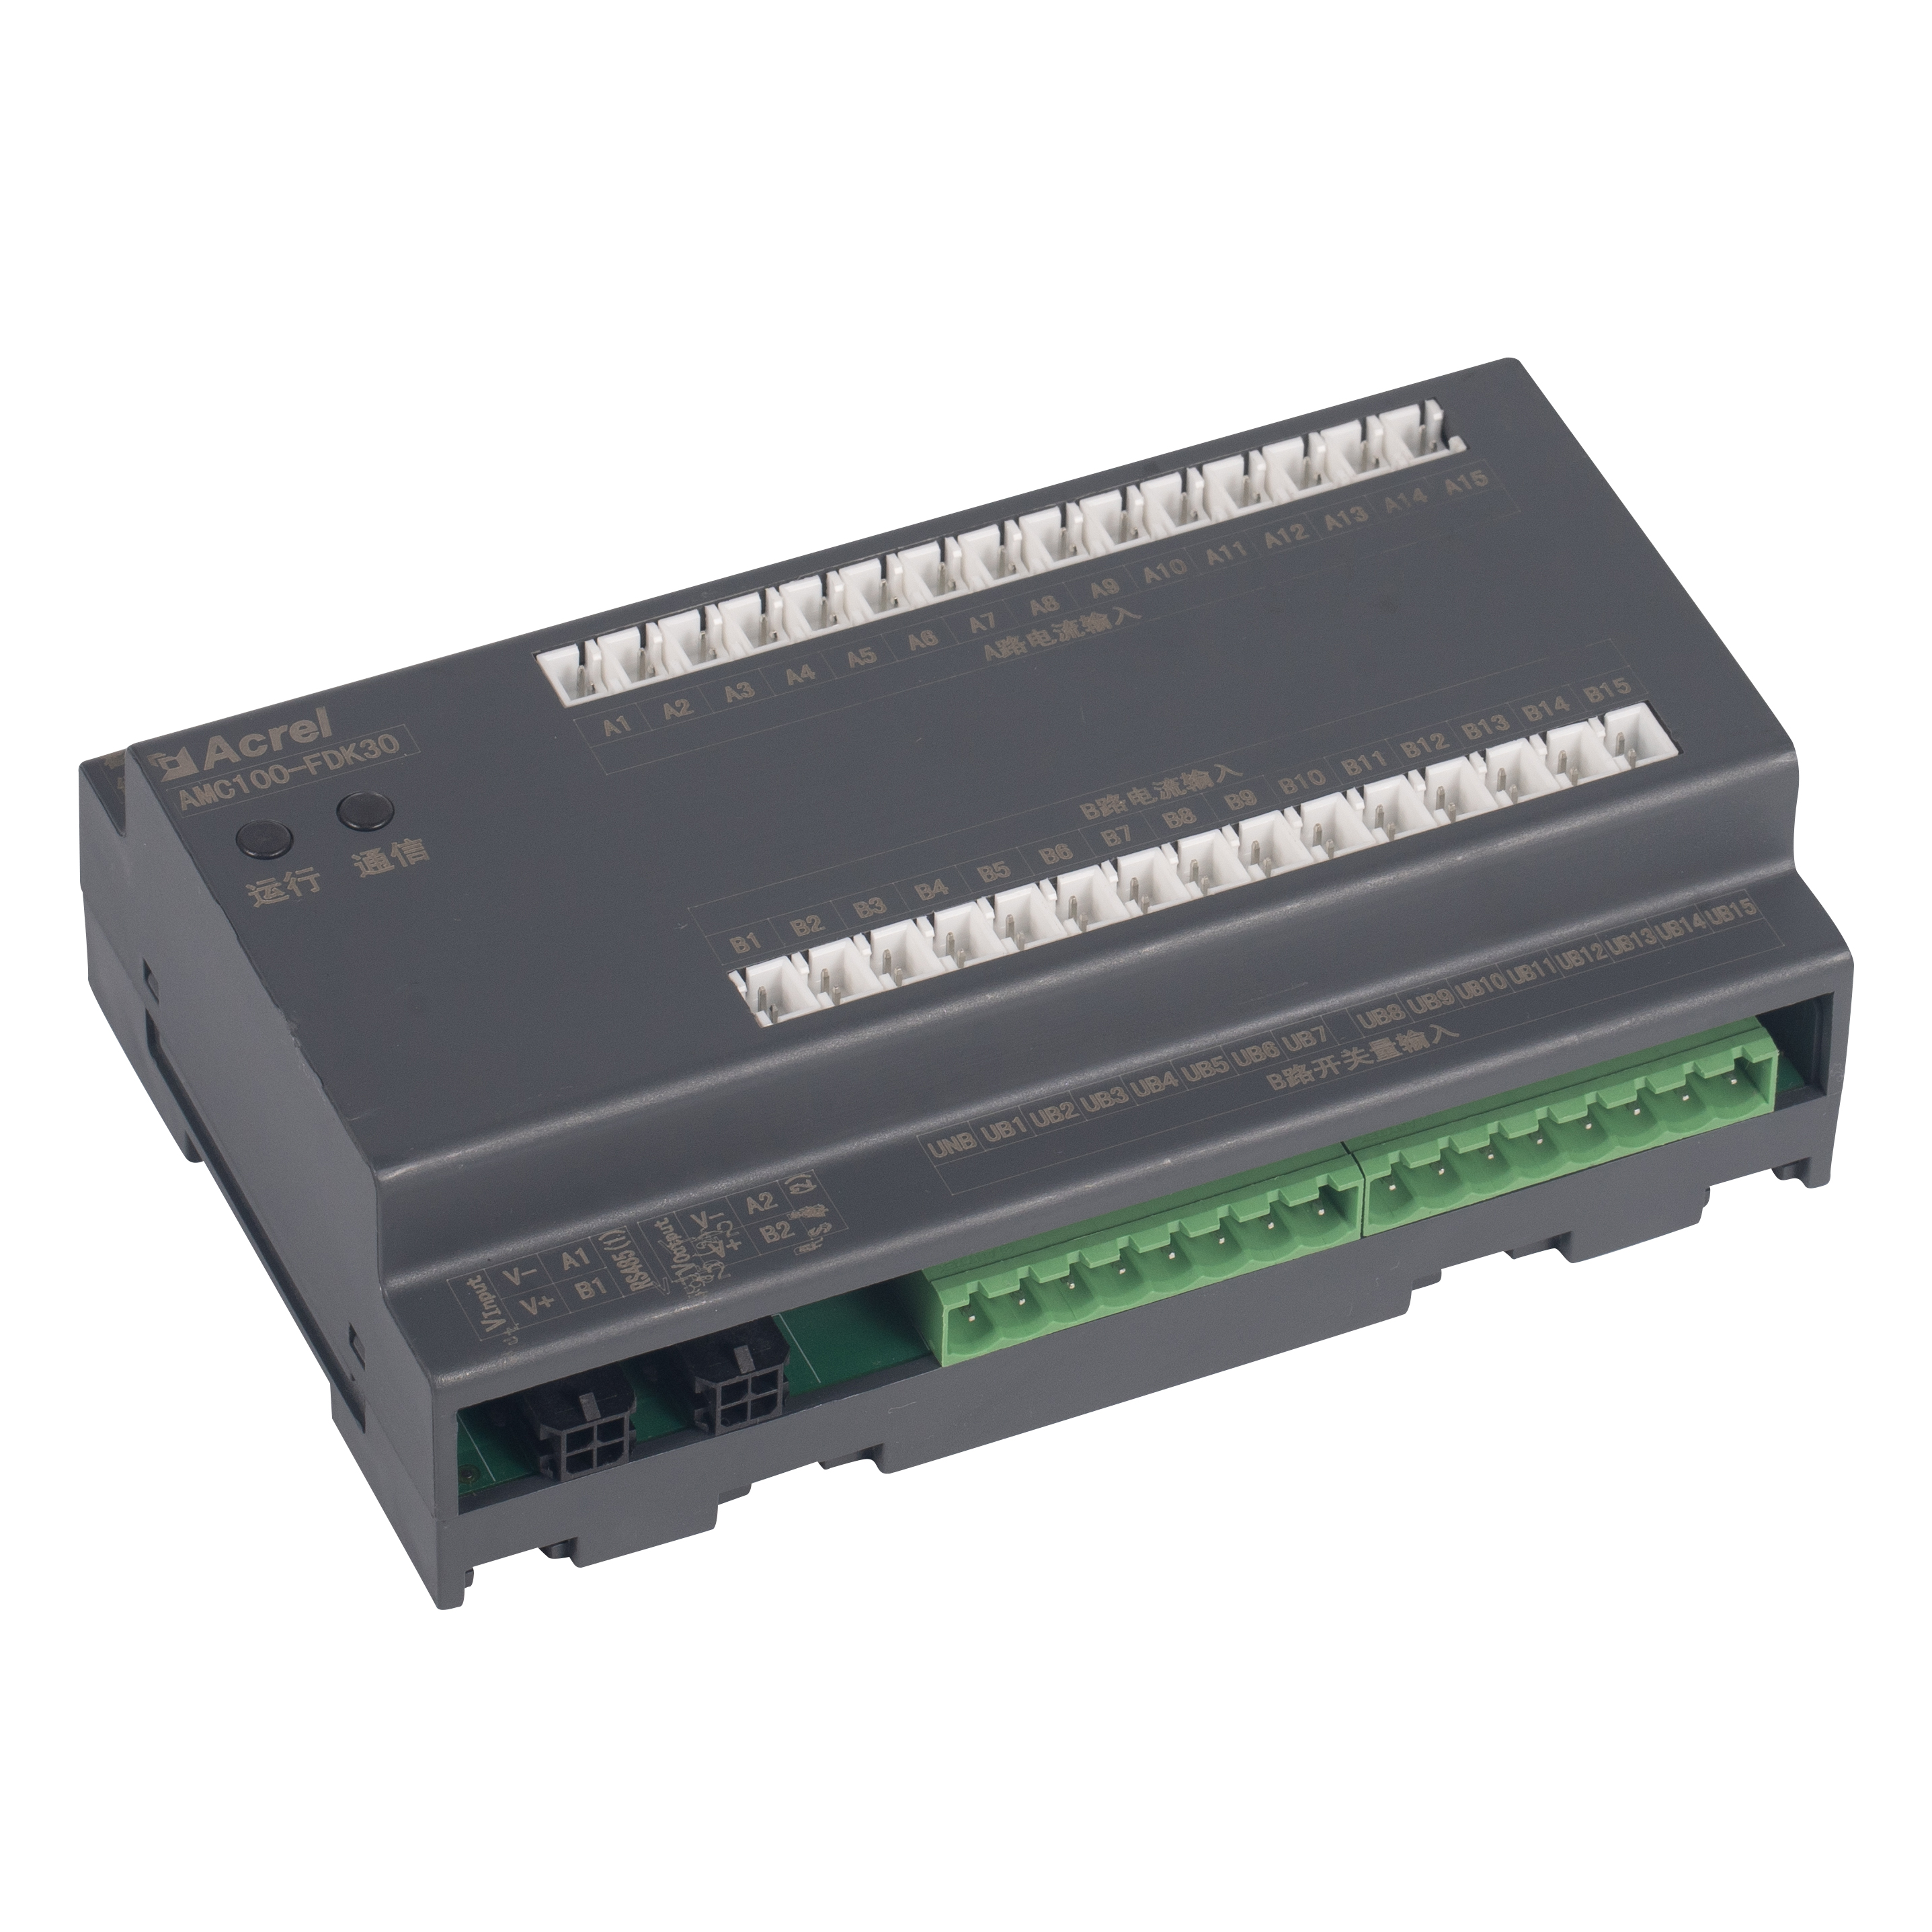 安科瑞 AMC100-ZD 數據機房精密配電監控裝置 檢測兩路獨立進線電壓 8路開關量輸入 4路開關量輸出 1路溫濕度監測